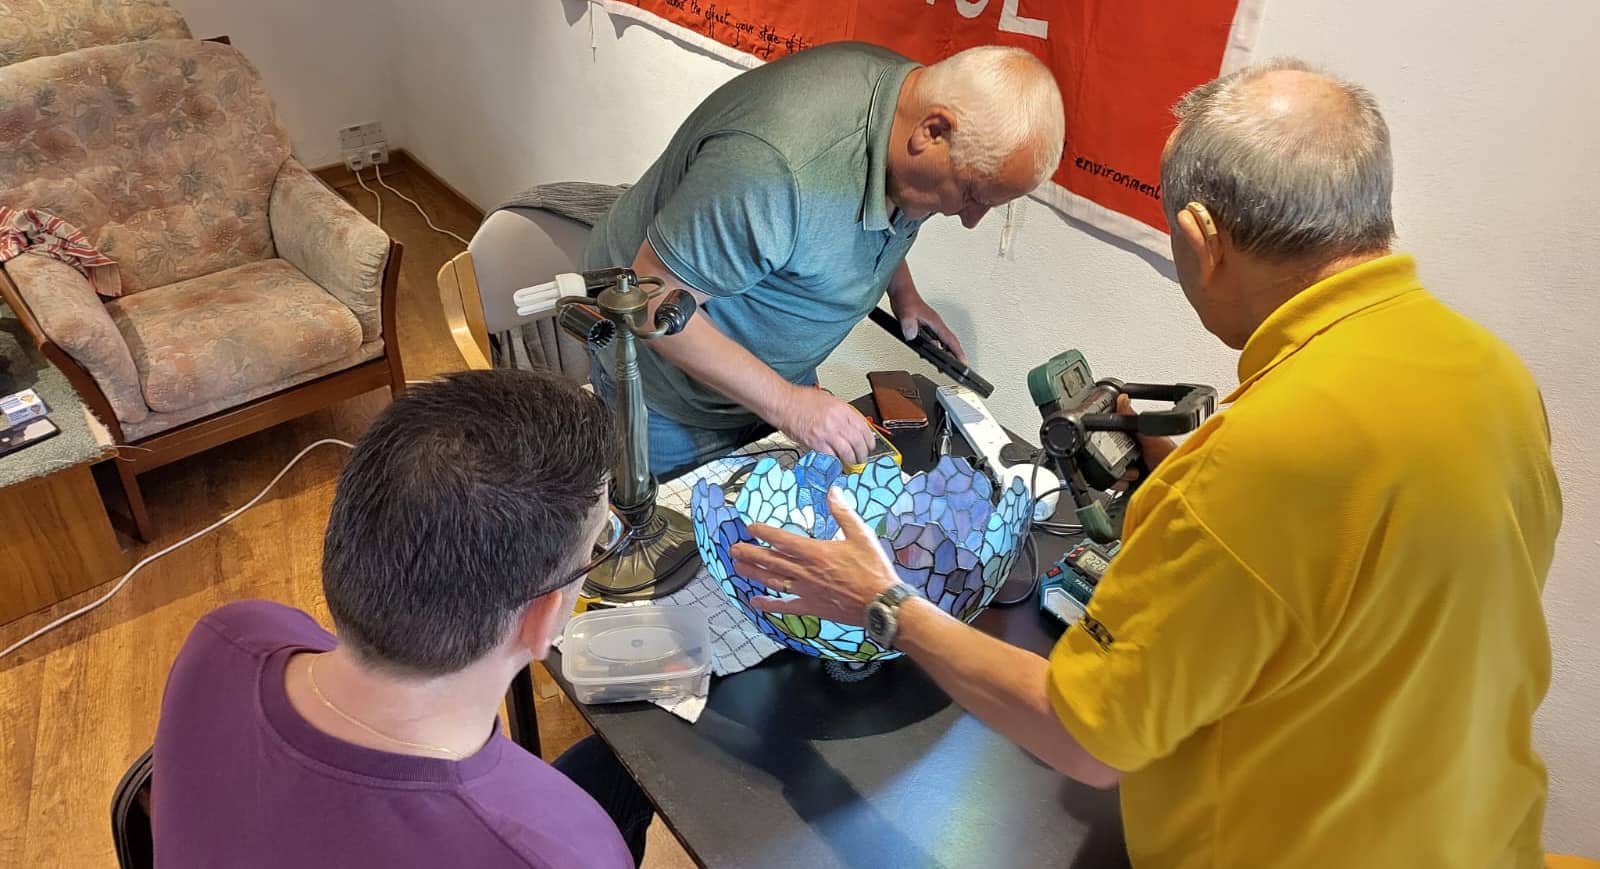 Men repairing a lamp at the Repair Cafe